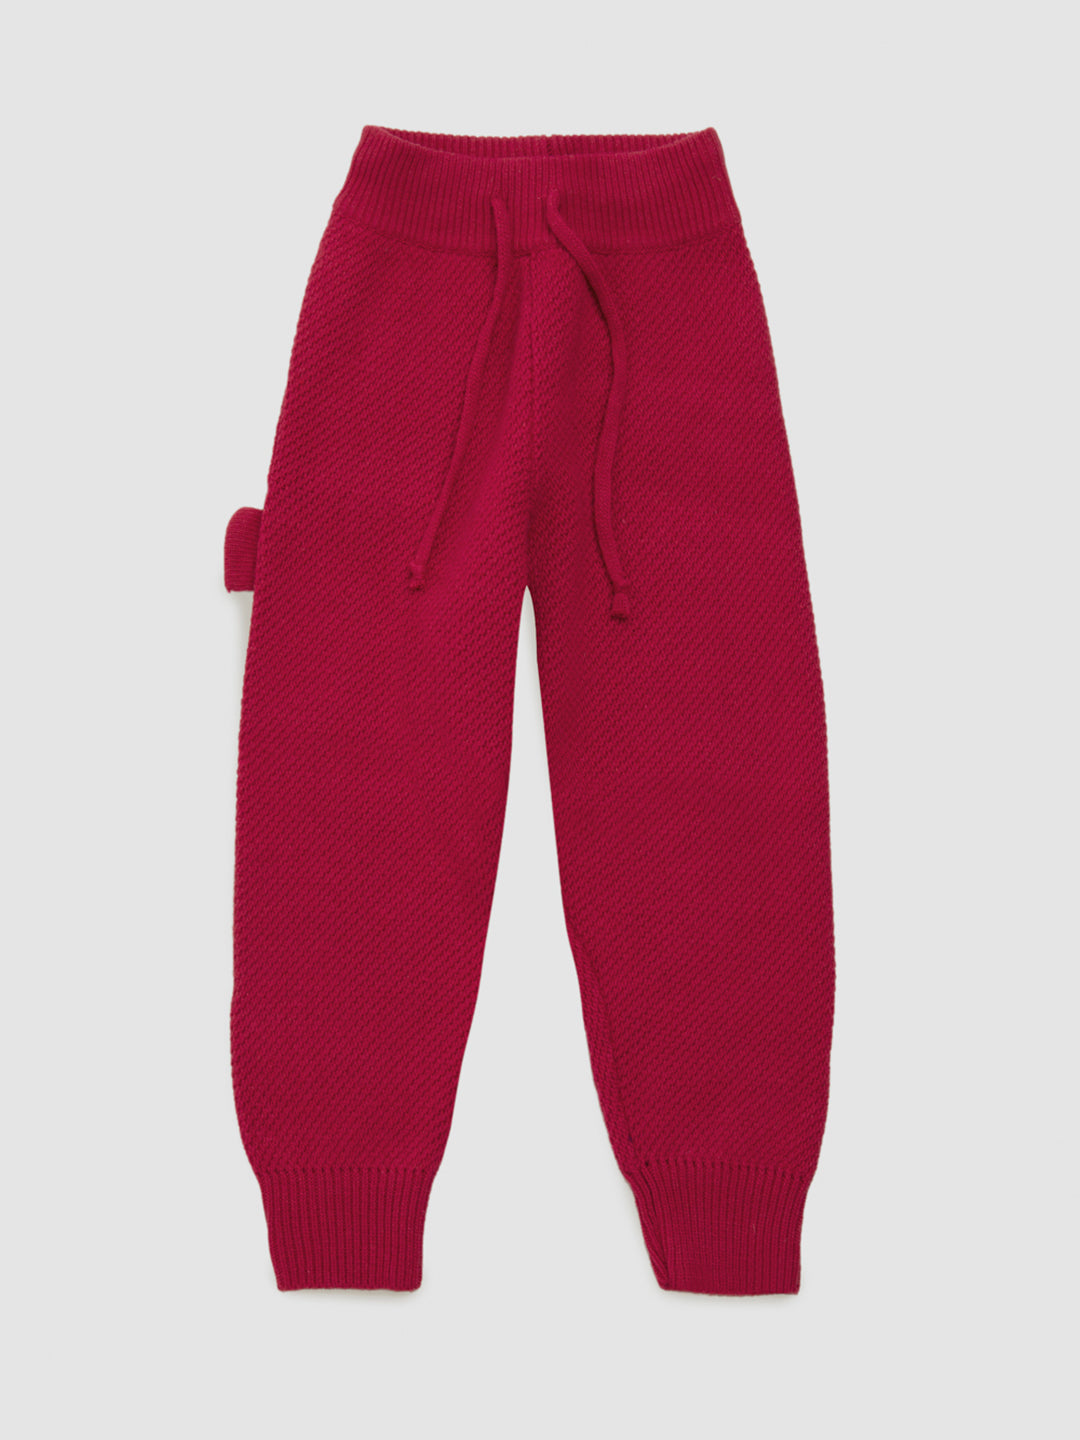 Pink Knitwear Trousers